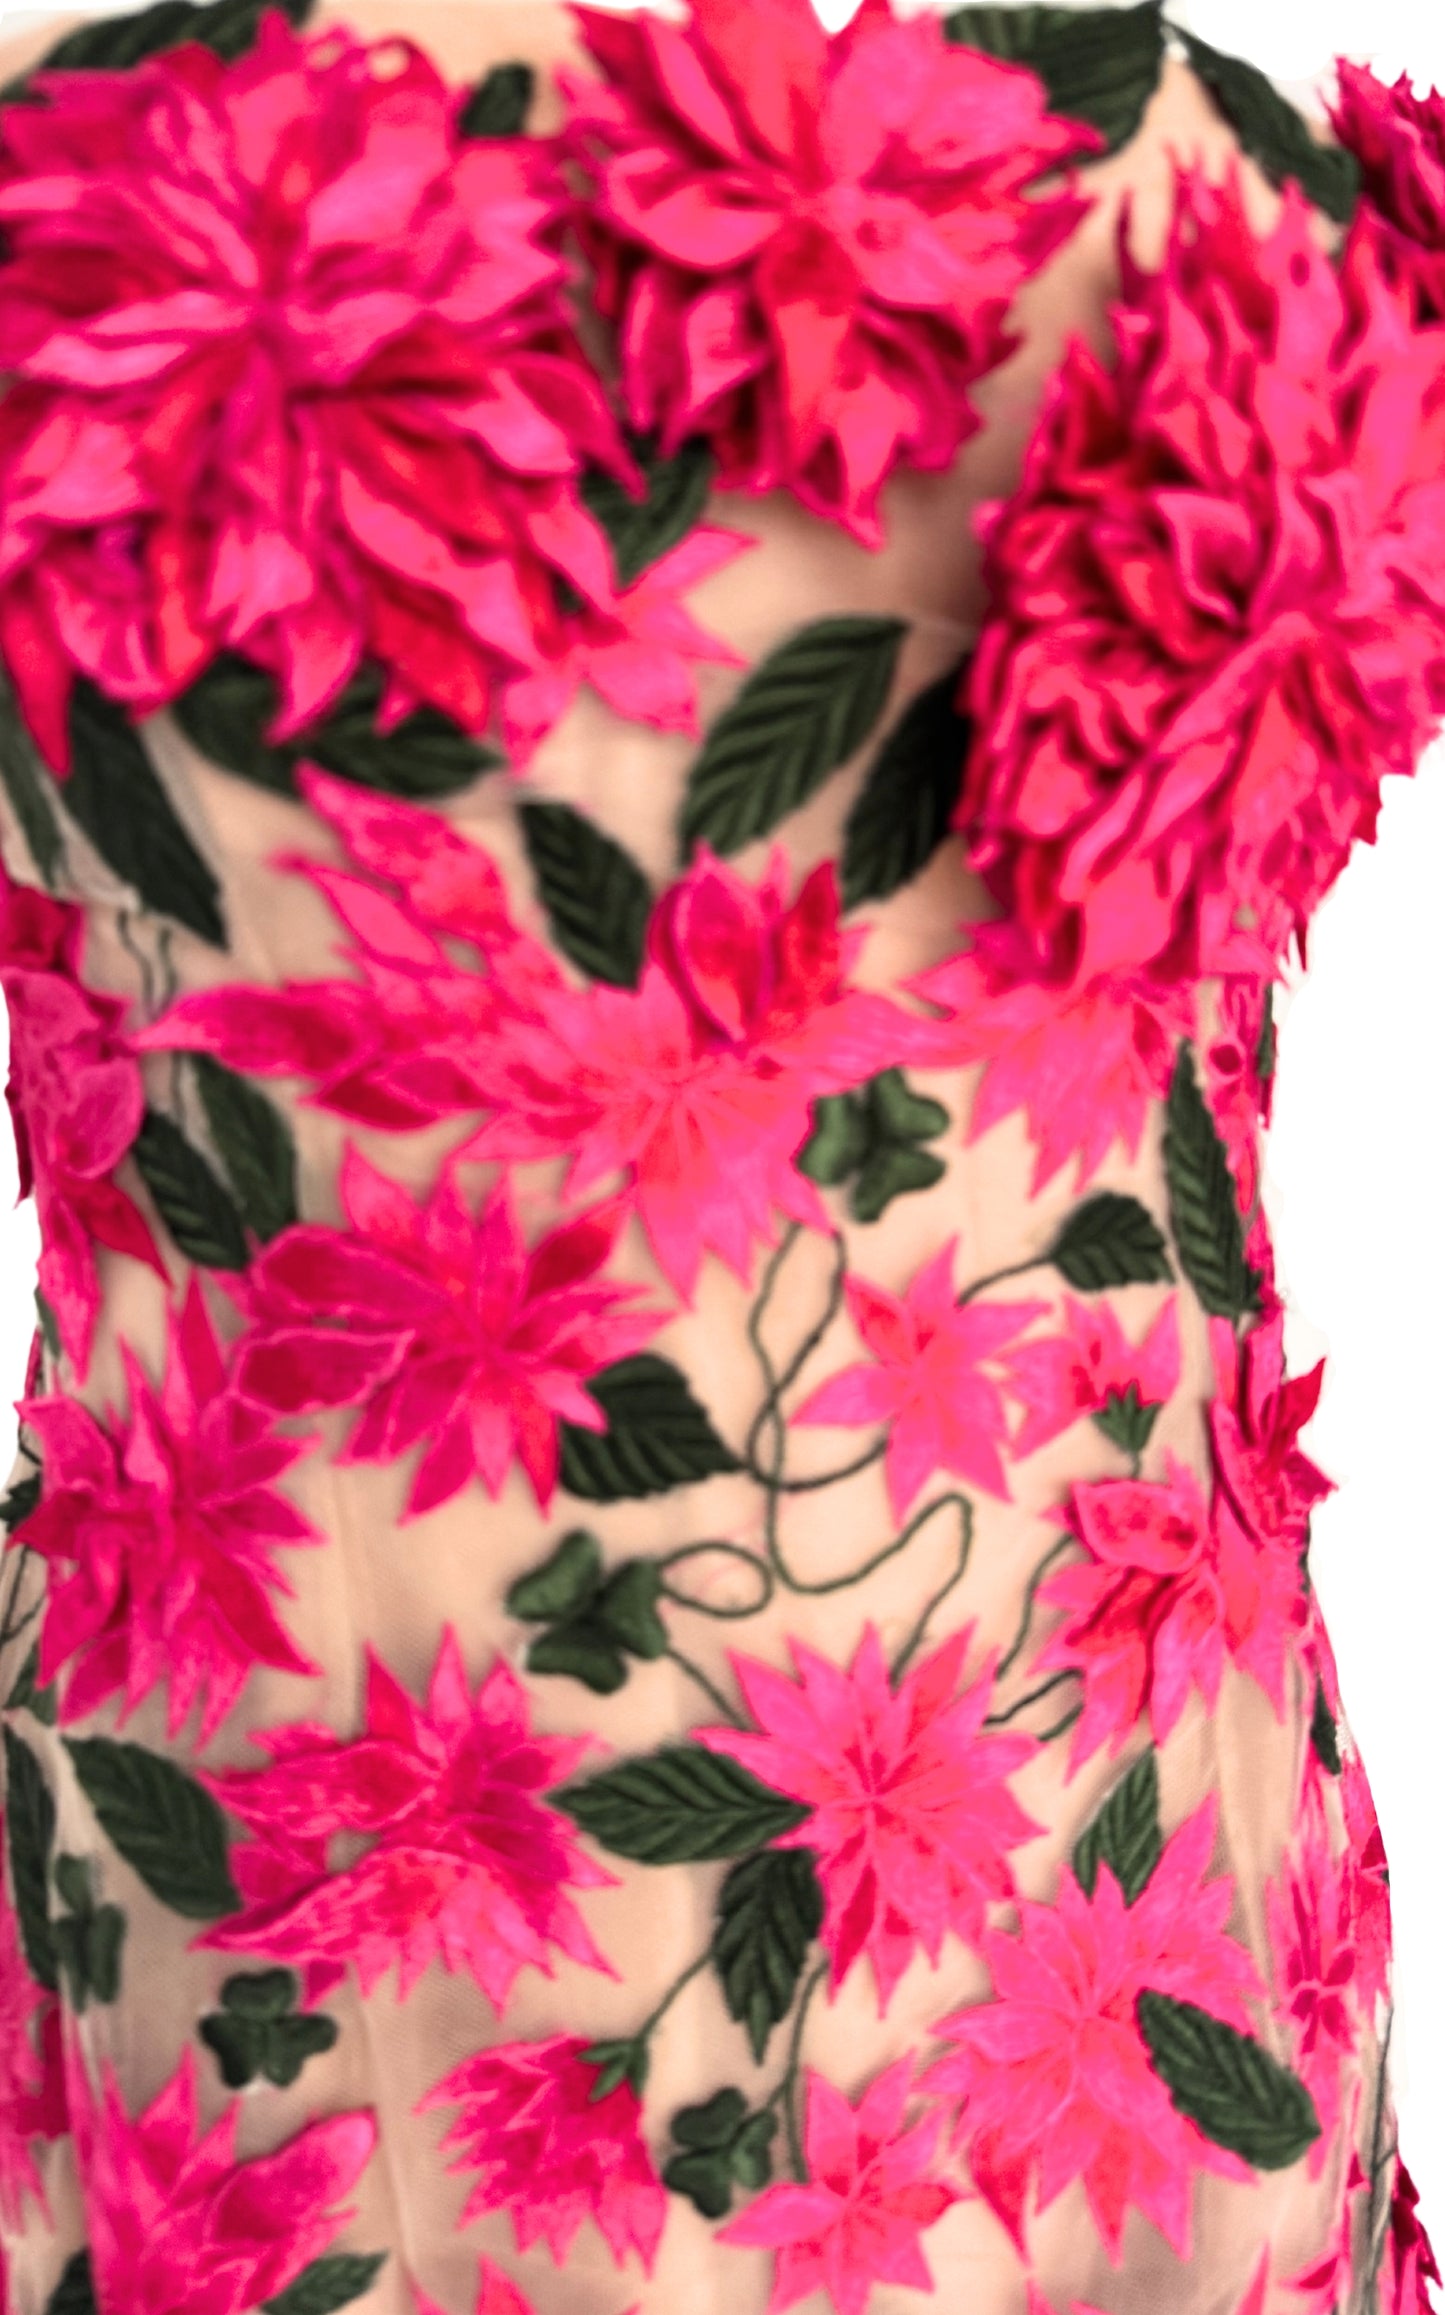 שמלת מיני דליה באפליקציה פרחונית